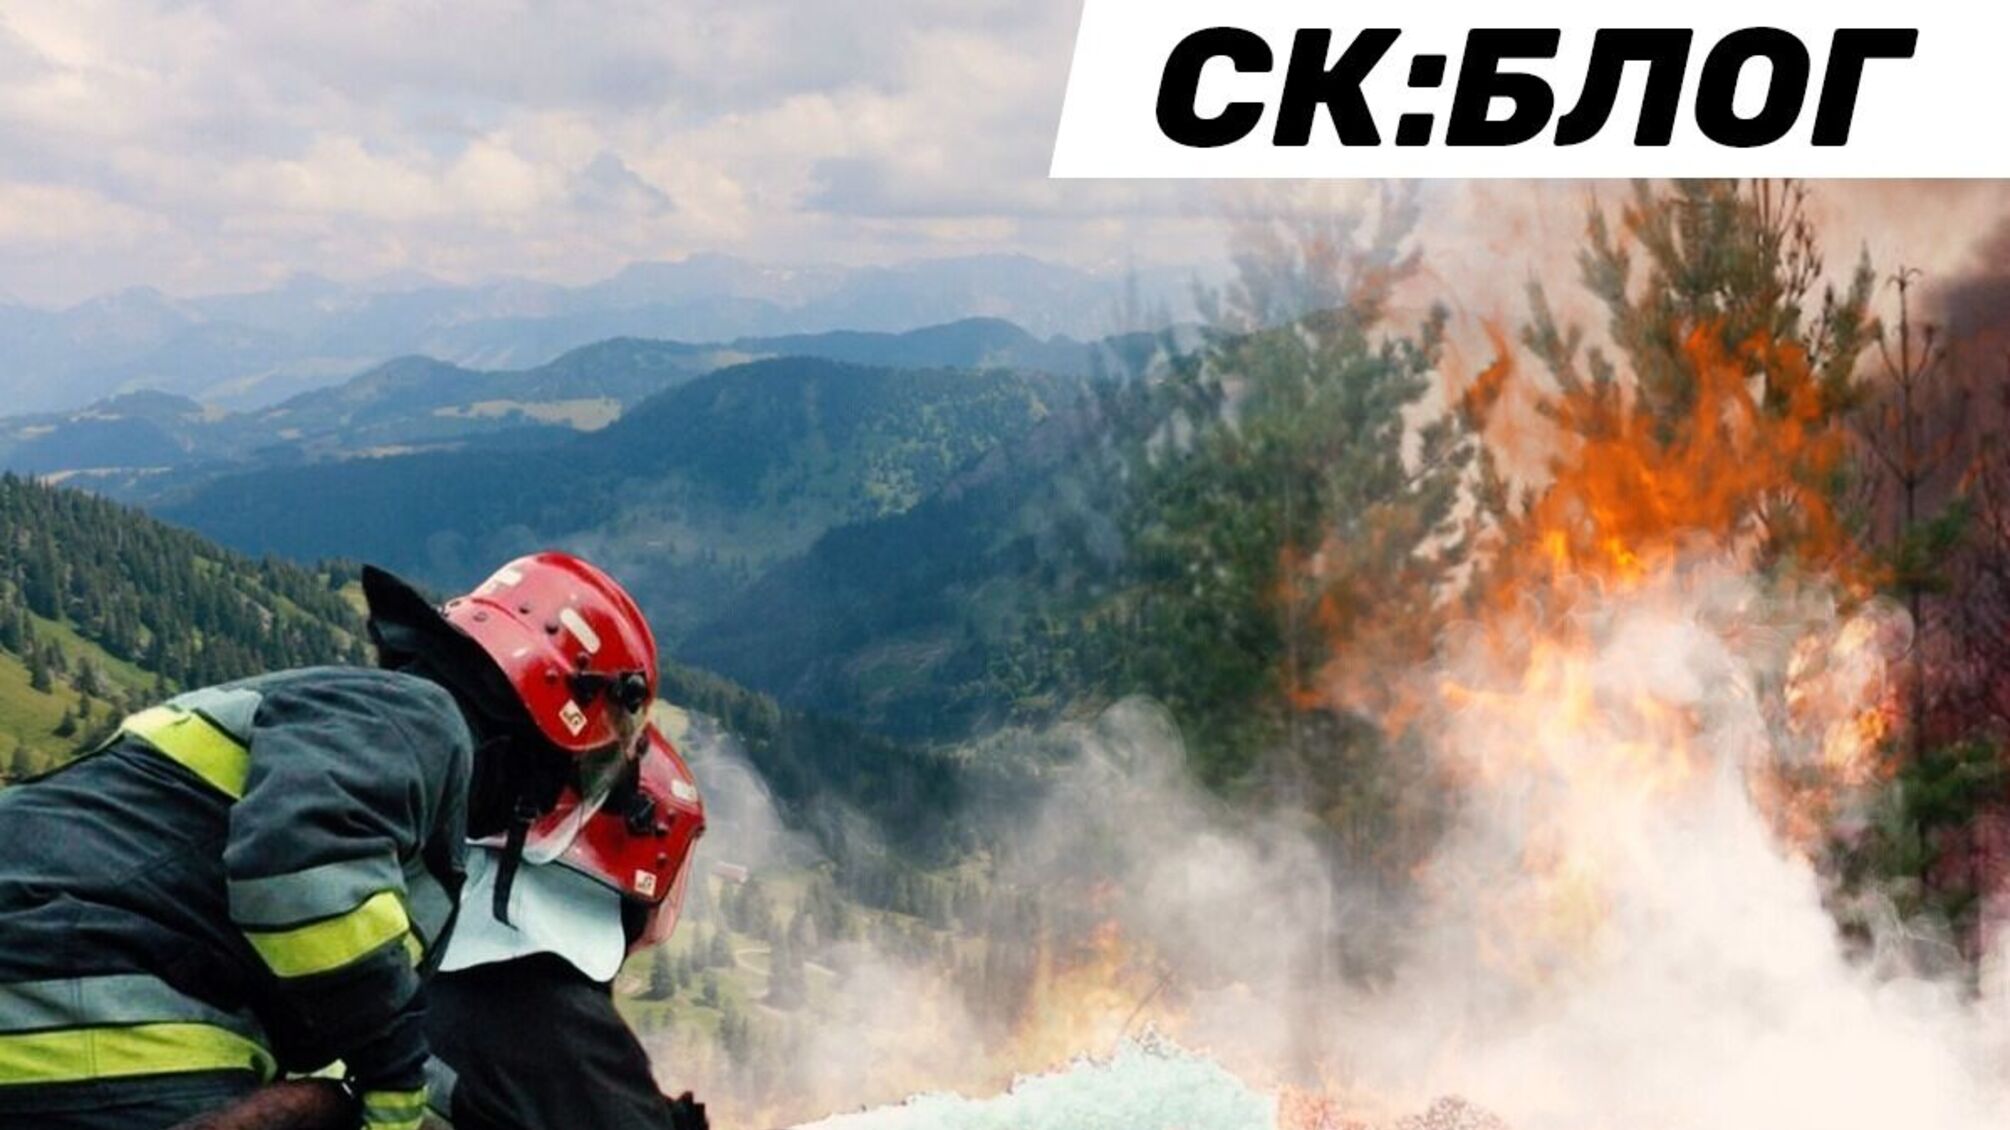 Карпати у вогні: у гірських районах фіксують лісові пожежі через підпали сміття (відео)